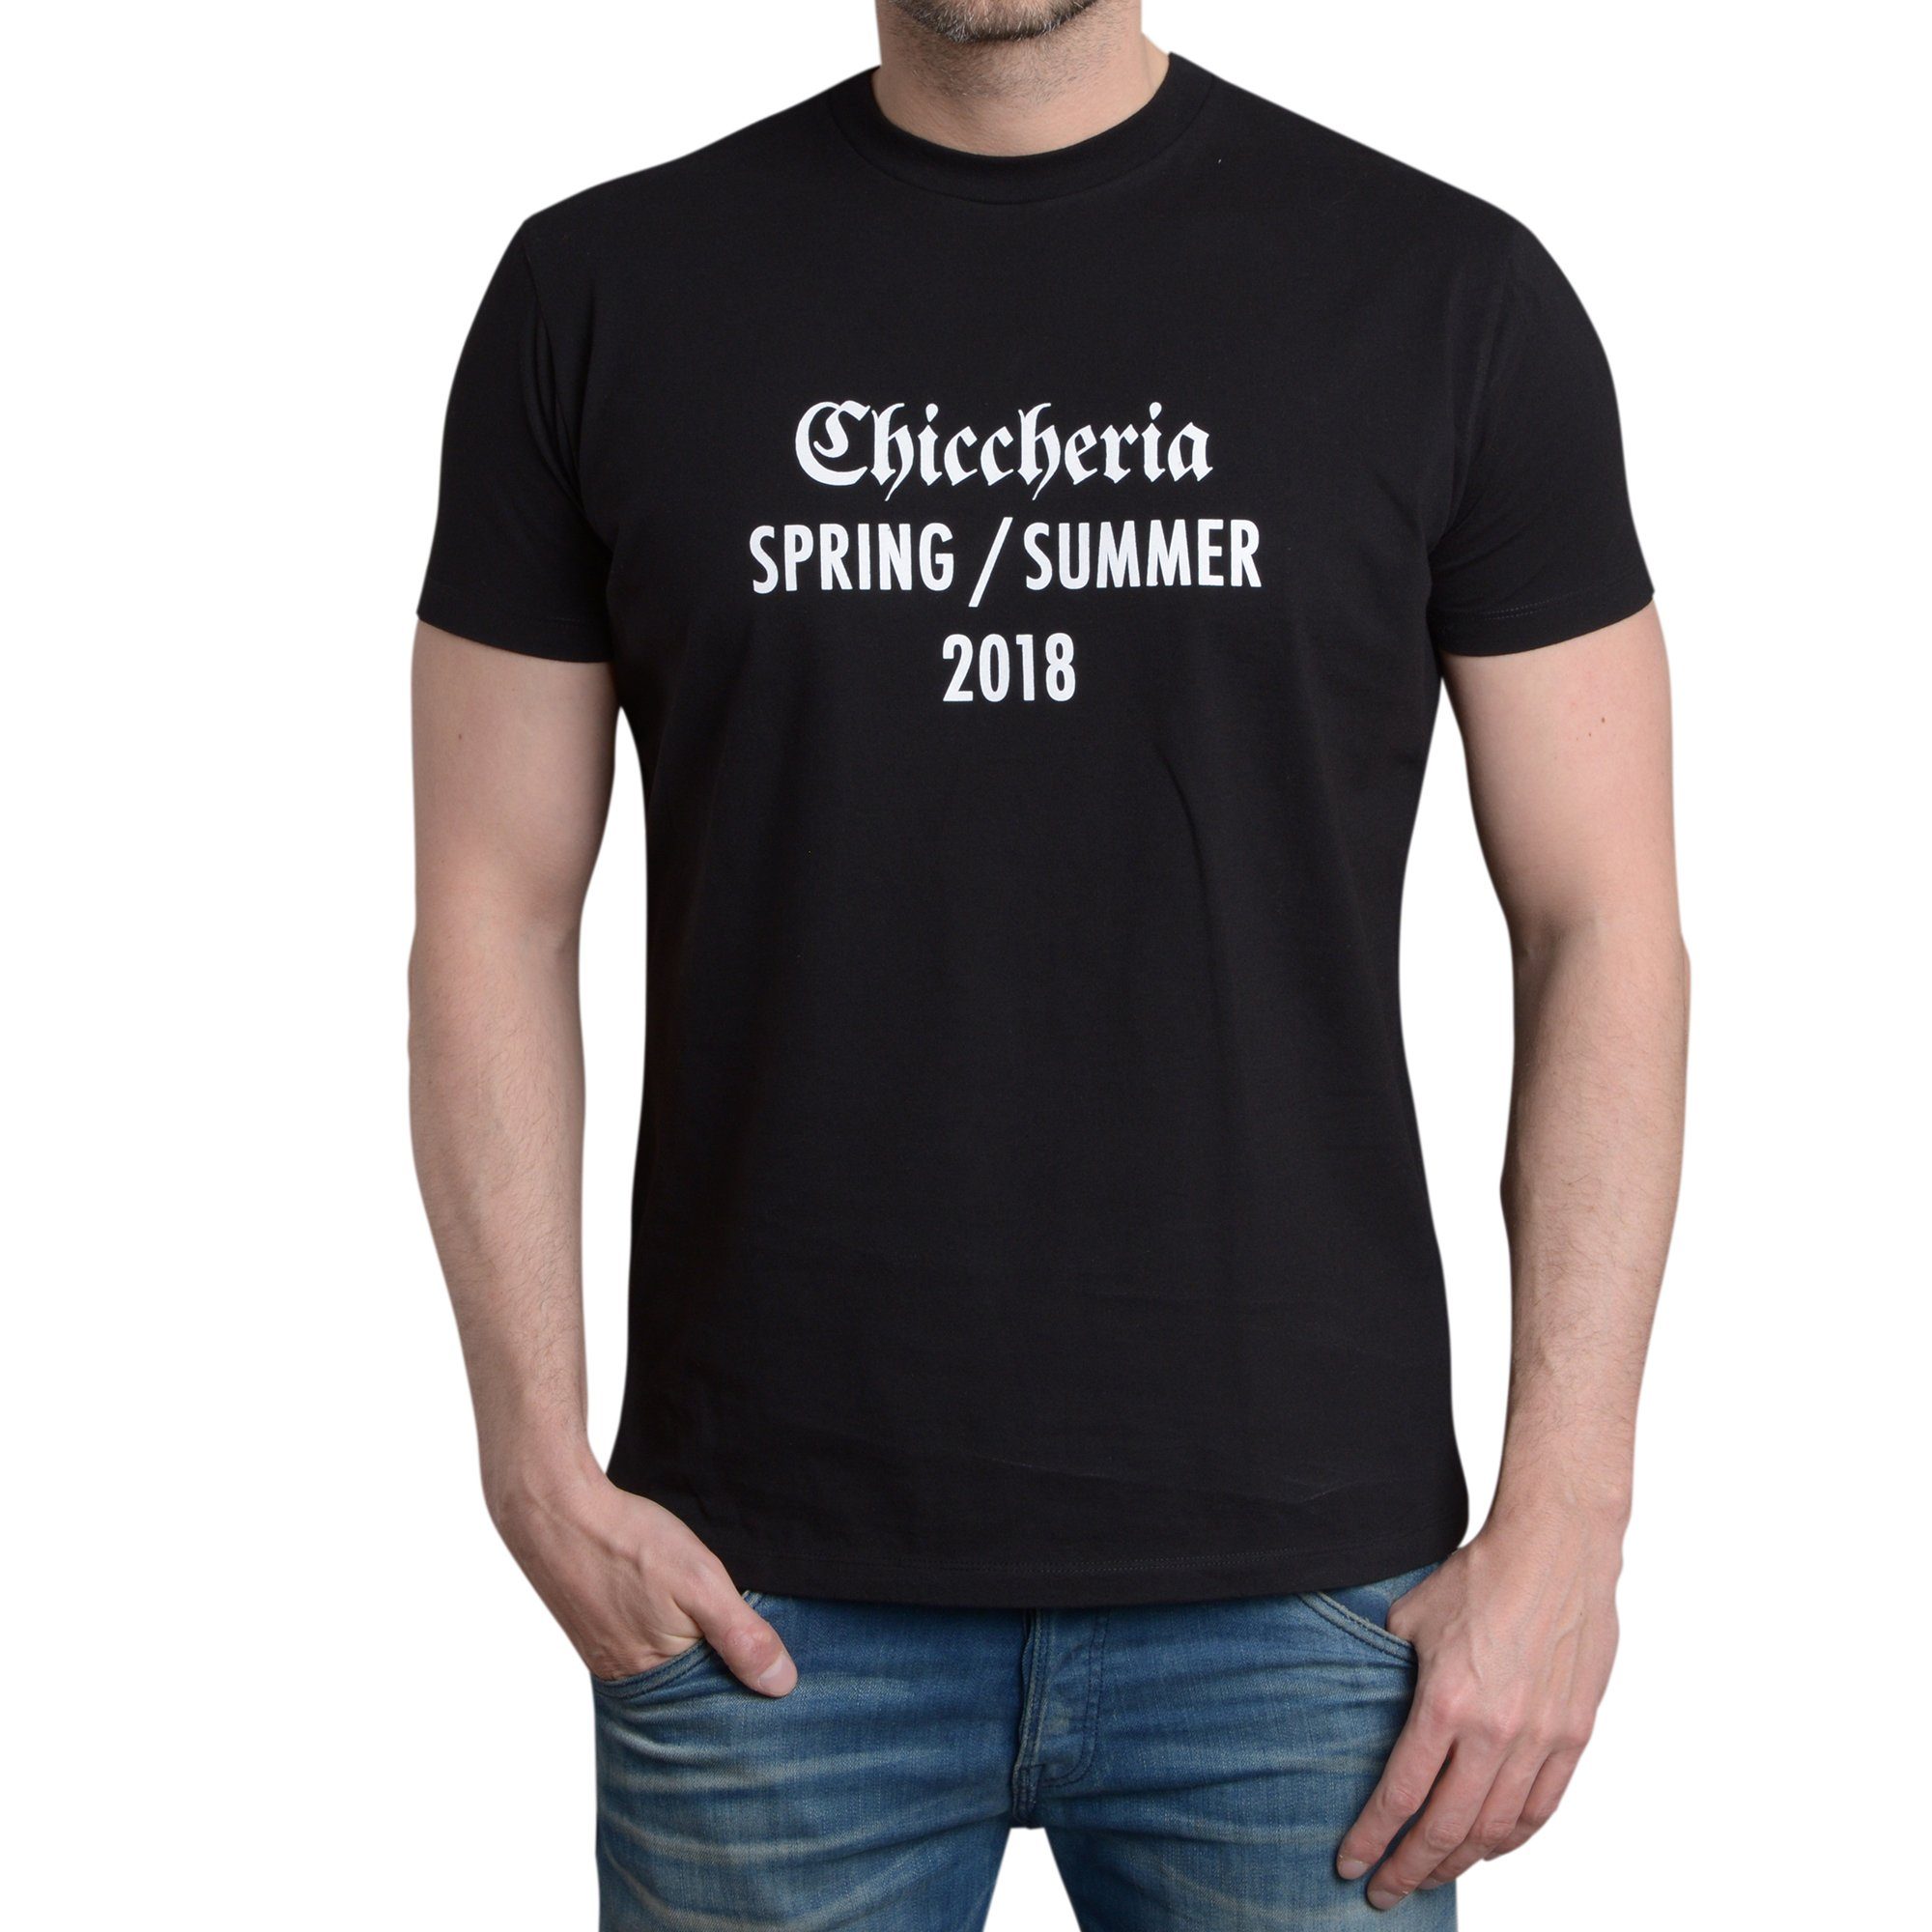 Chiccheria Brand T-Shirt Spring / Summer 2018 Schwarz